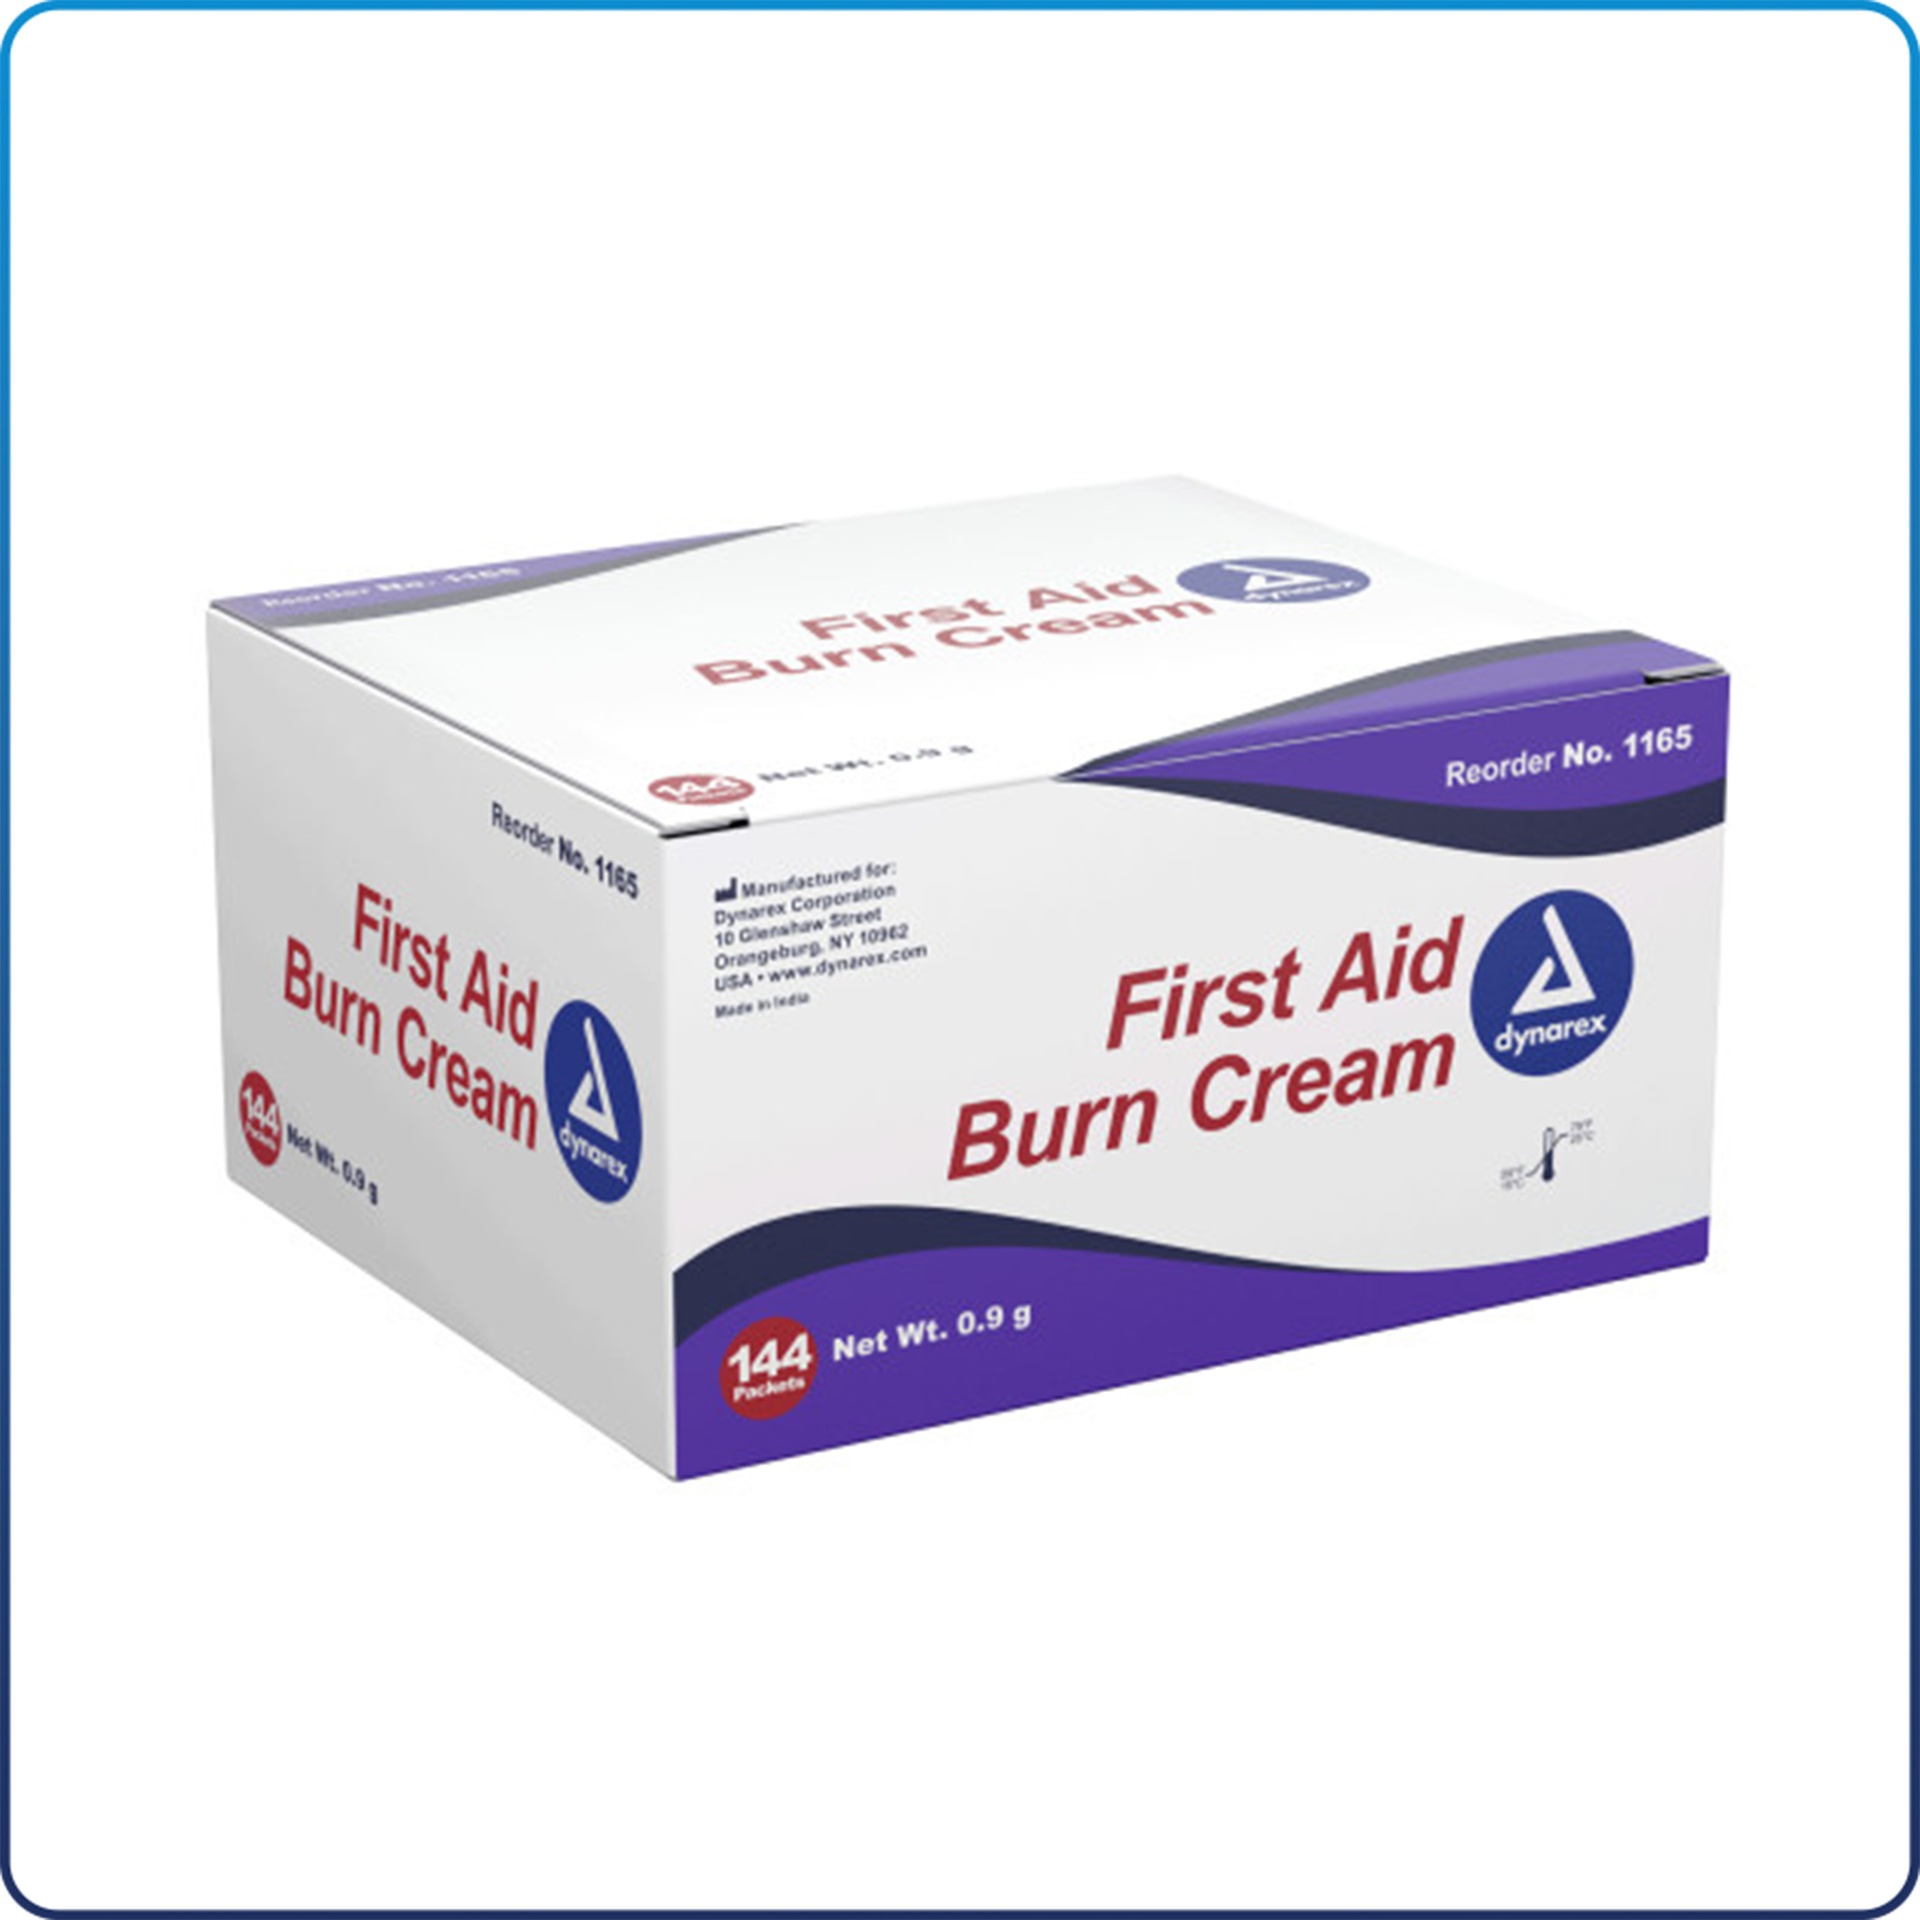 [DYN1165] First Aid Burn Cream 0.9g Foil Packet